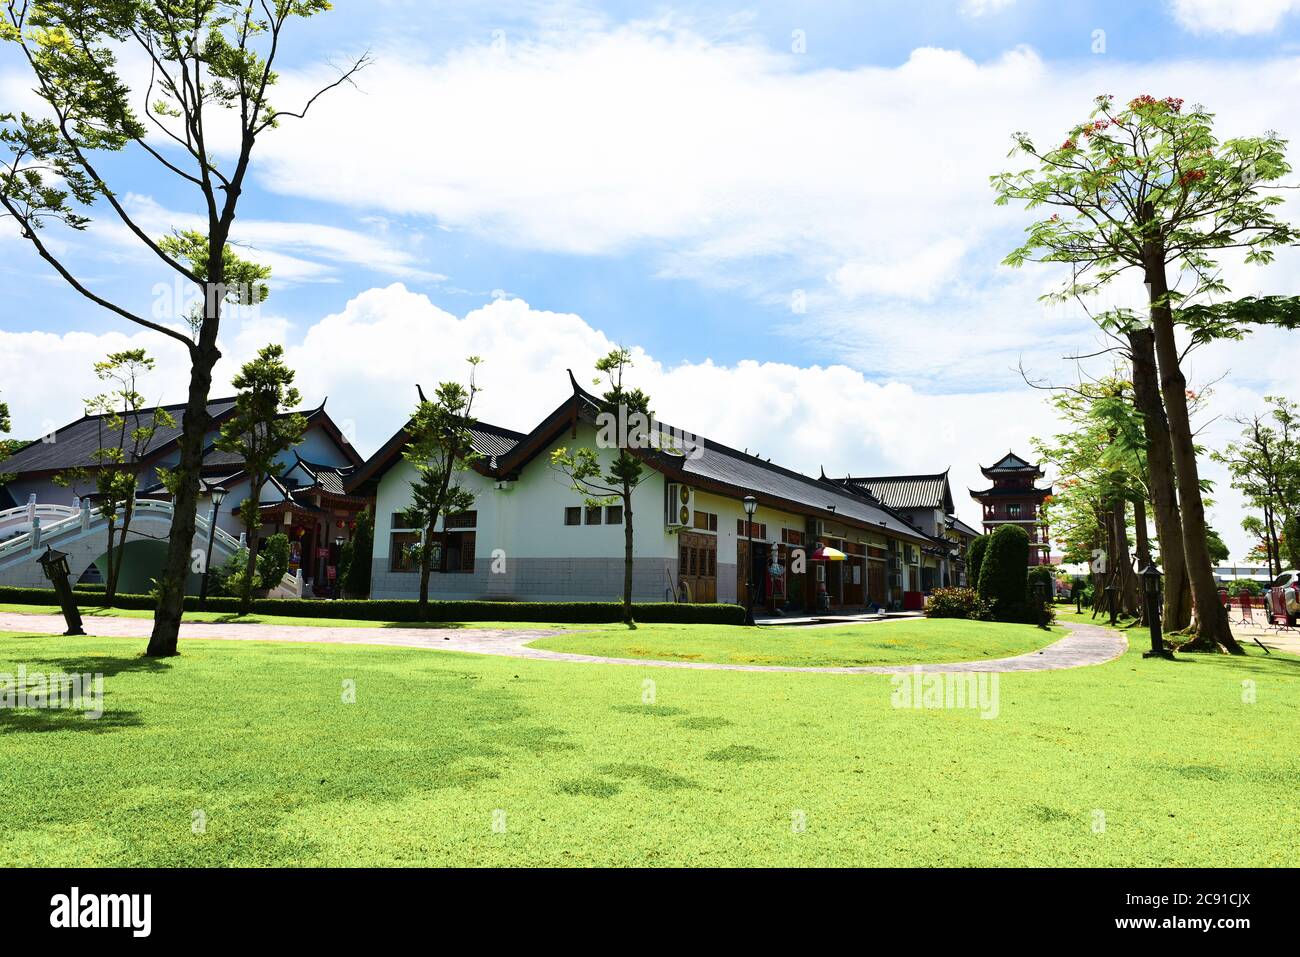 Suphanburi cityThailand Mai 27 2018 des touristes non identifiés viennent visiter la ville de Chine, maison de dragon au Shrine Park à Suphanburi Thaïlande. Banque D'Images